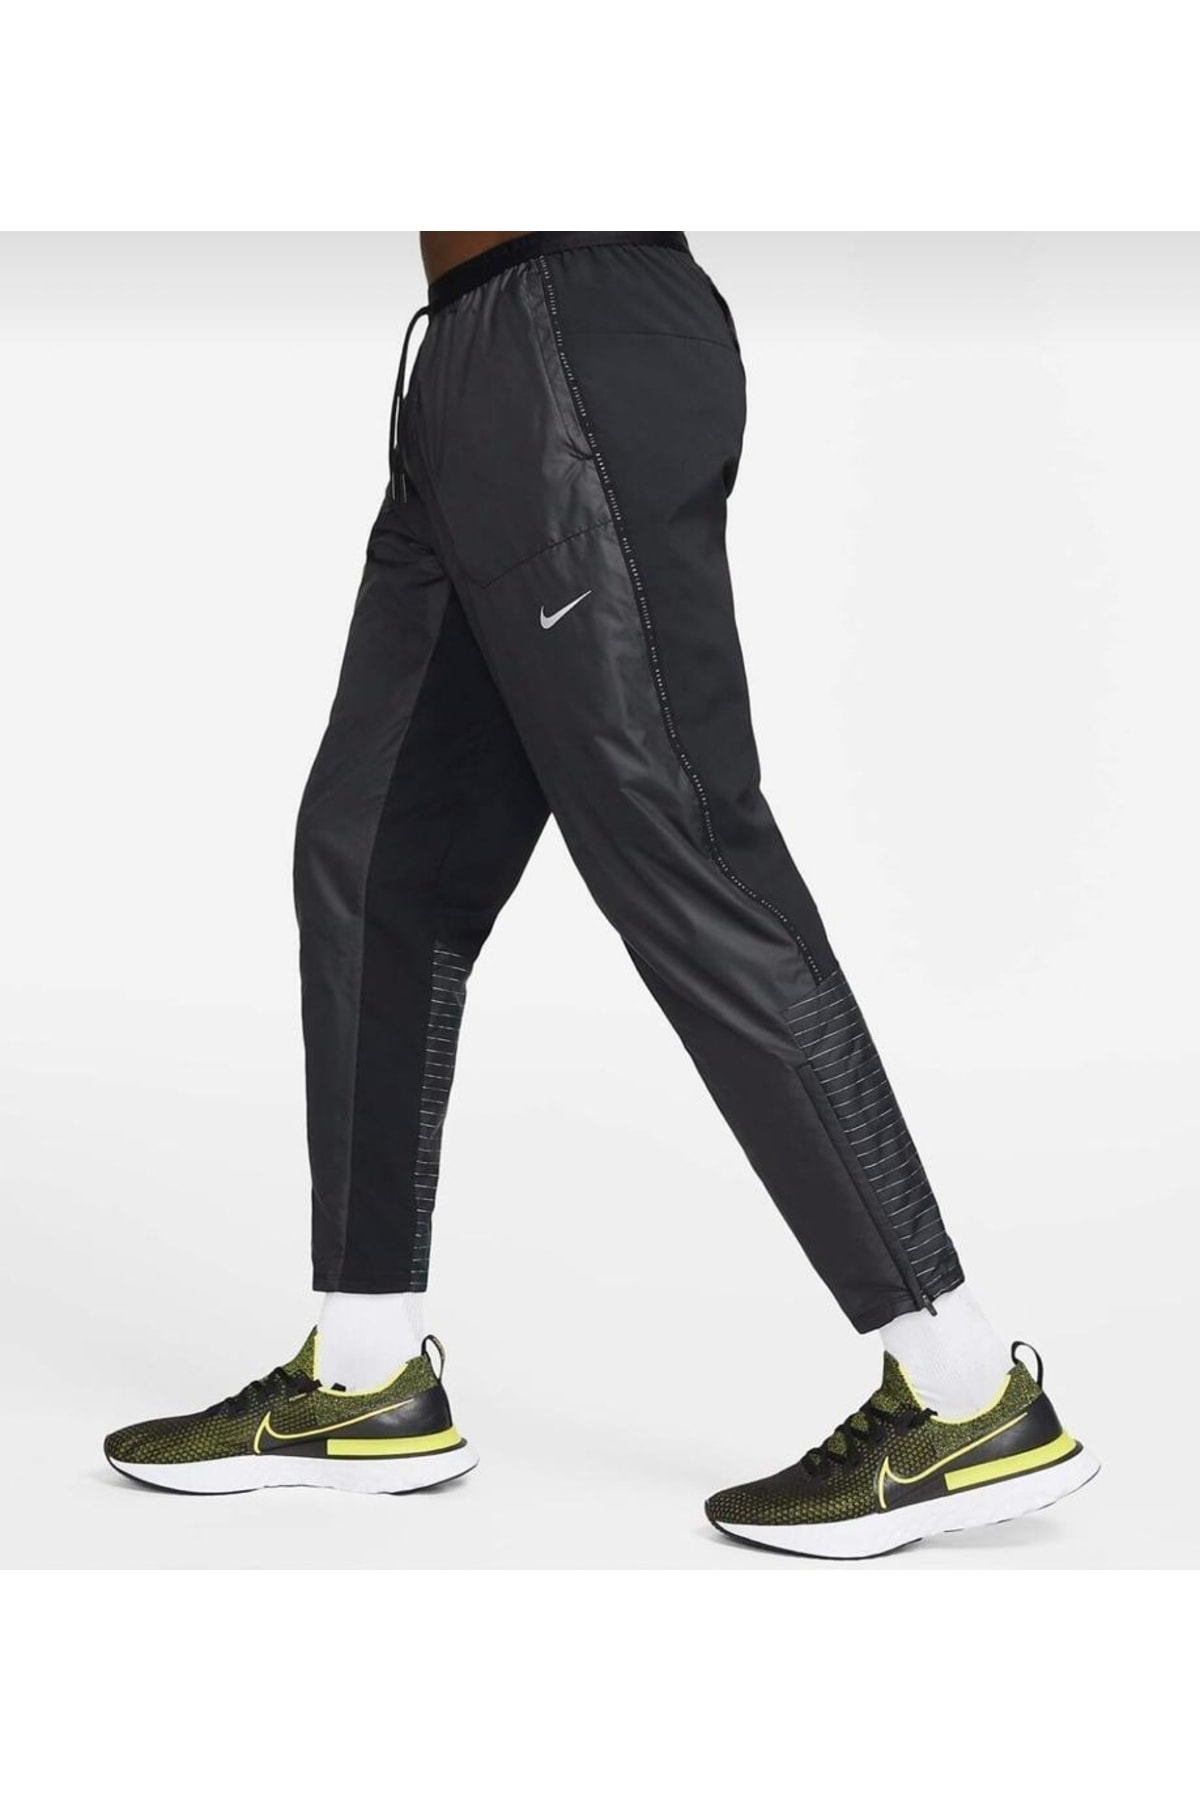 Nike Storm-fıt Run Division Phenom Elite Flash Erkek Koşu Eşofman Altı